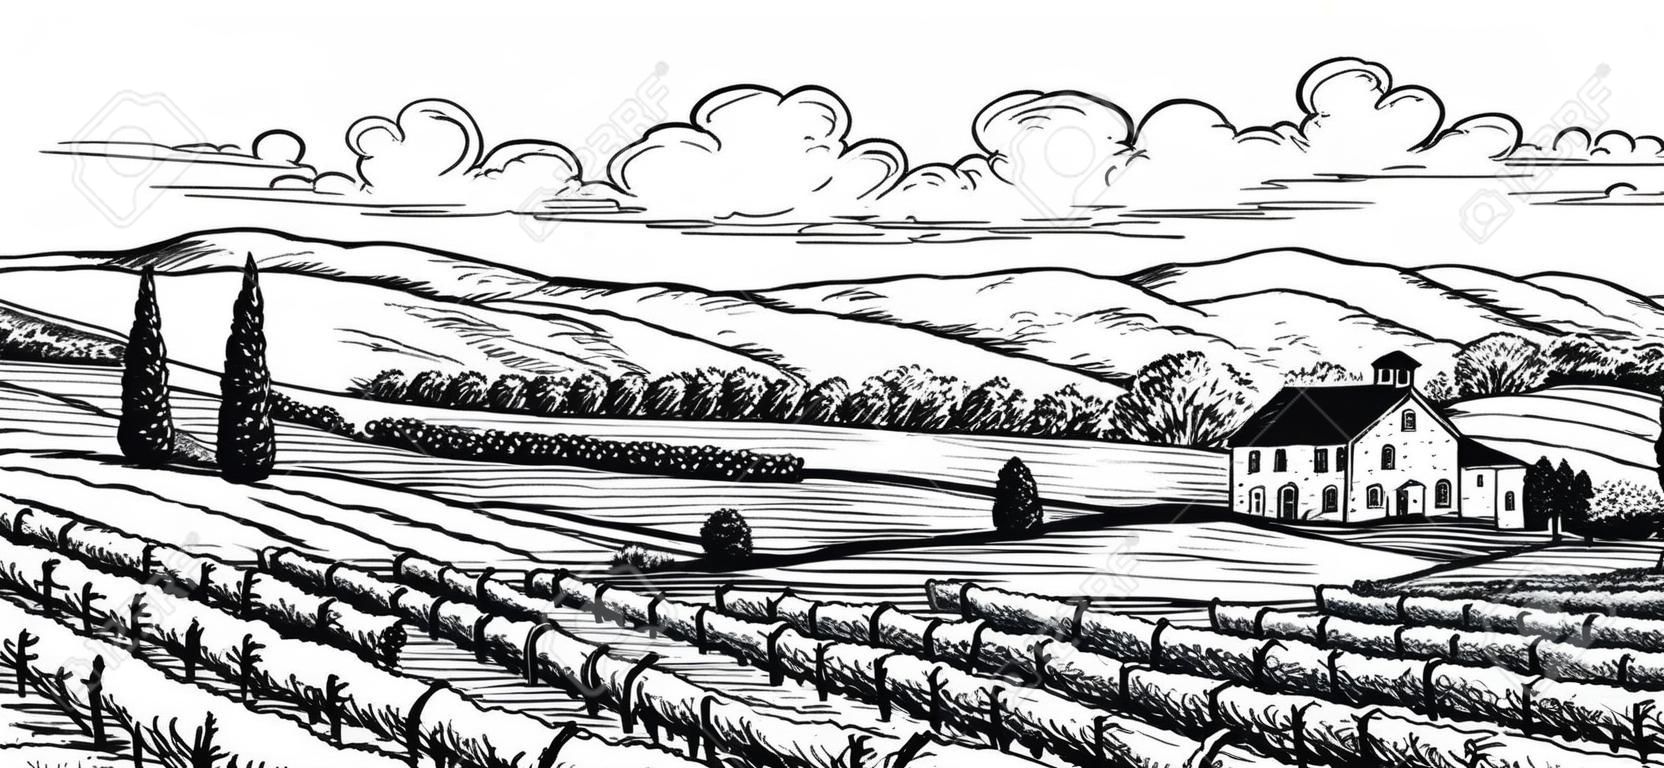 Hand drawn paysage viticole. Isolé sur fond blanc. Vintage illustration vectorielle de style.